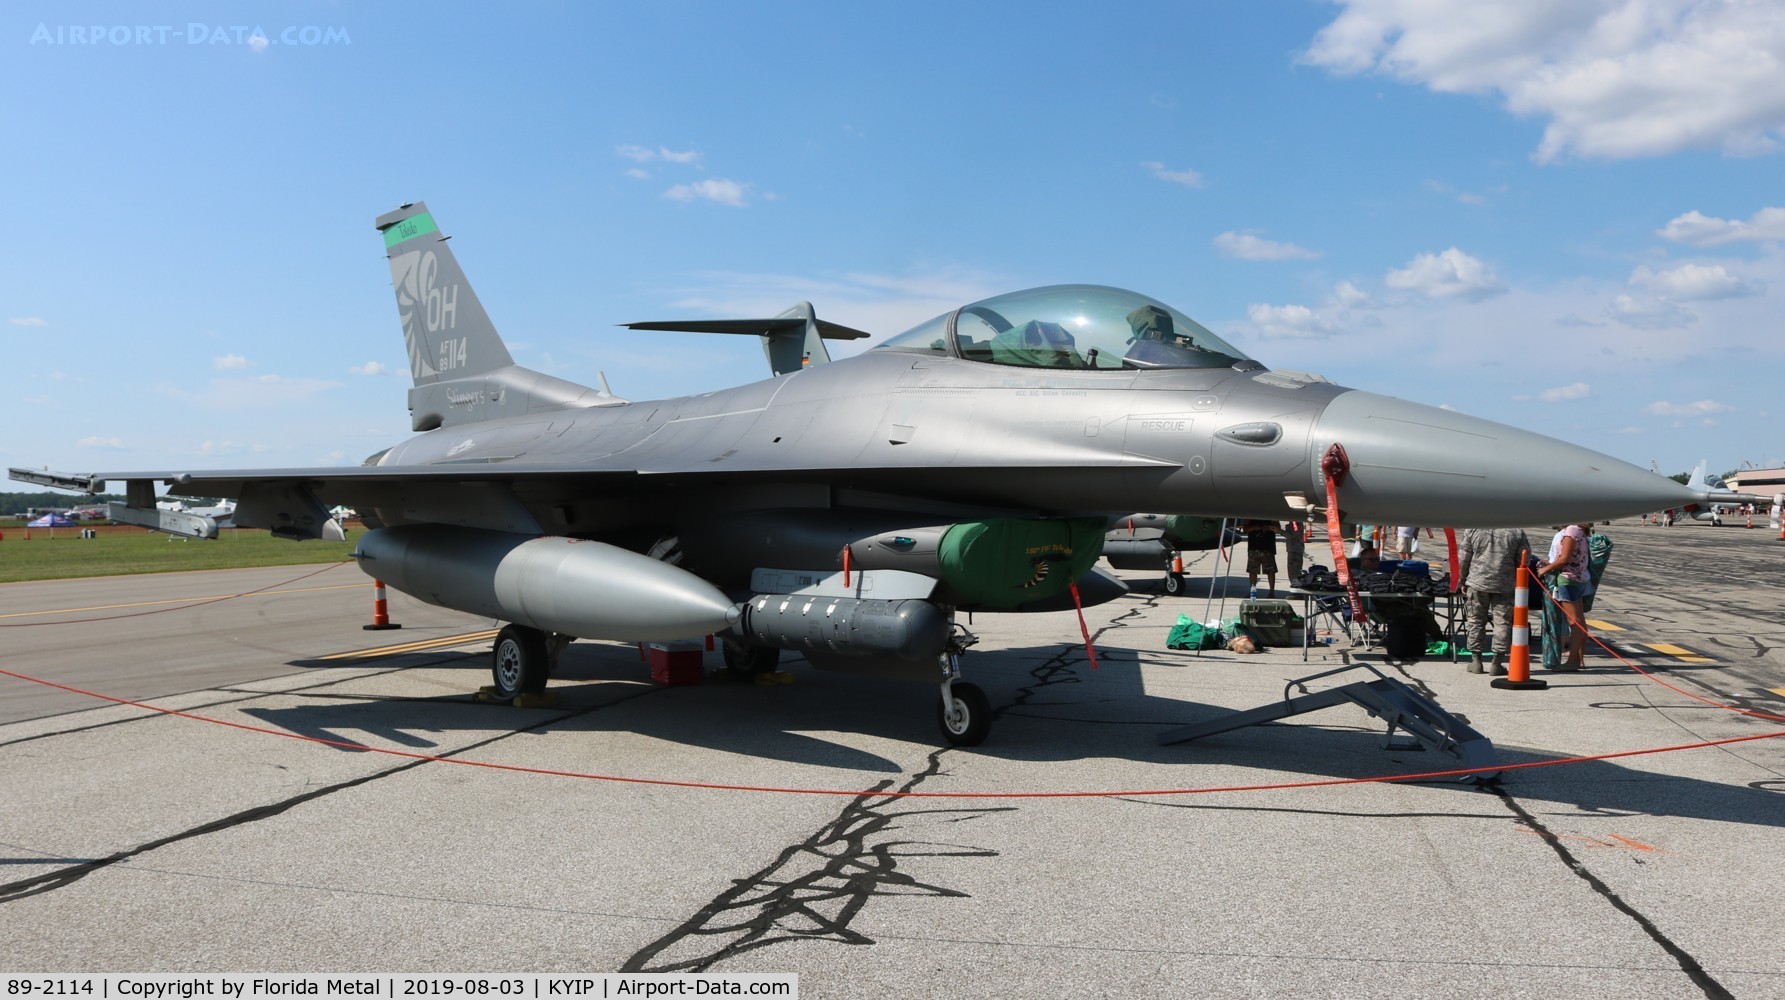 89-2114, 1989 General Dynamics F-16C C/N 1C-267, F-16C zx